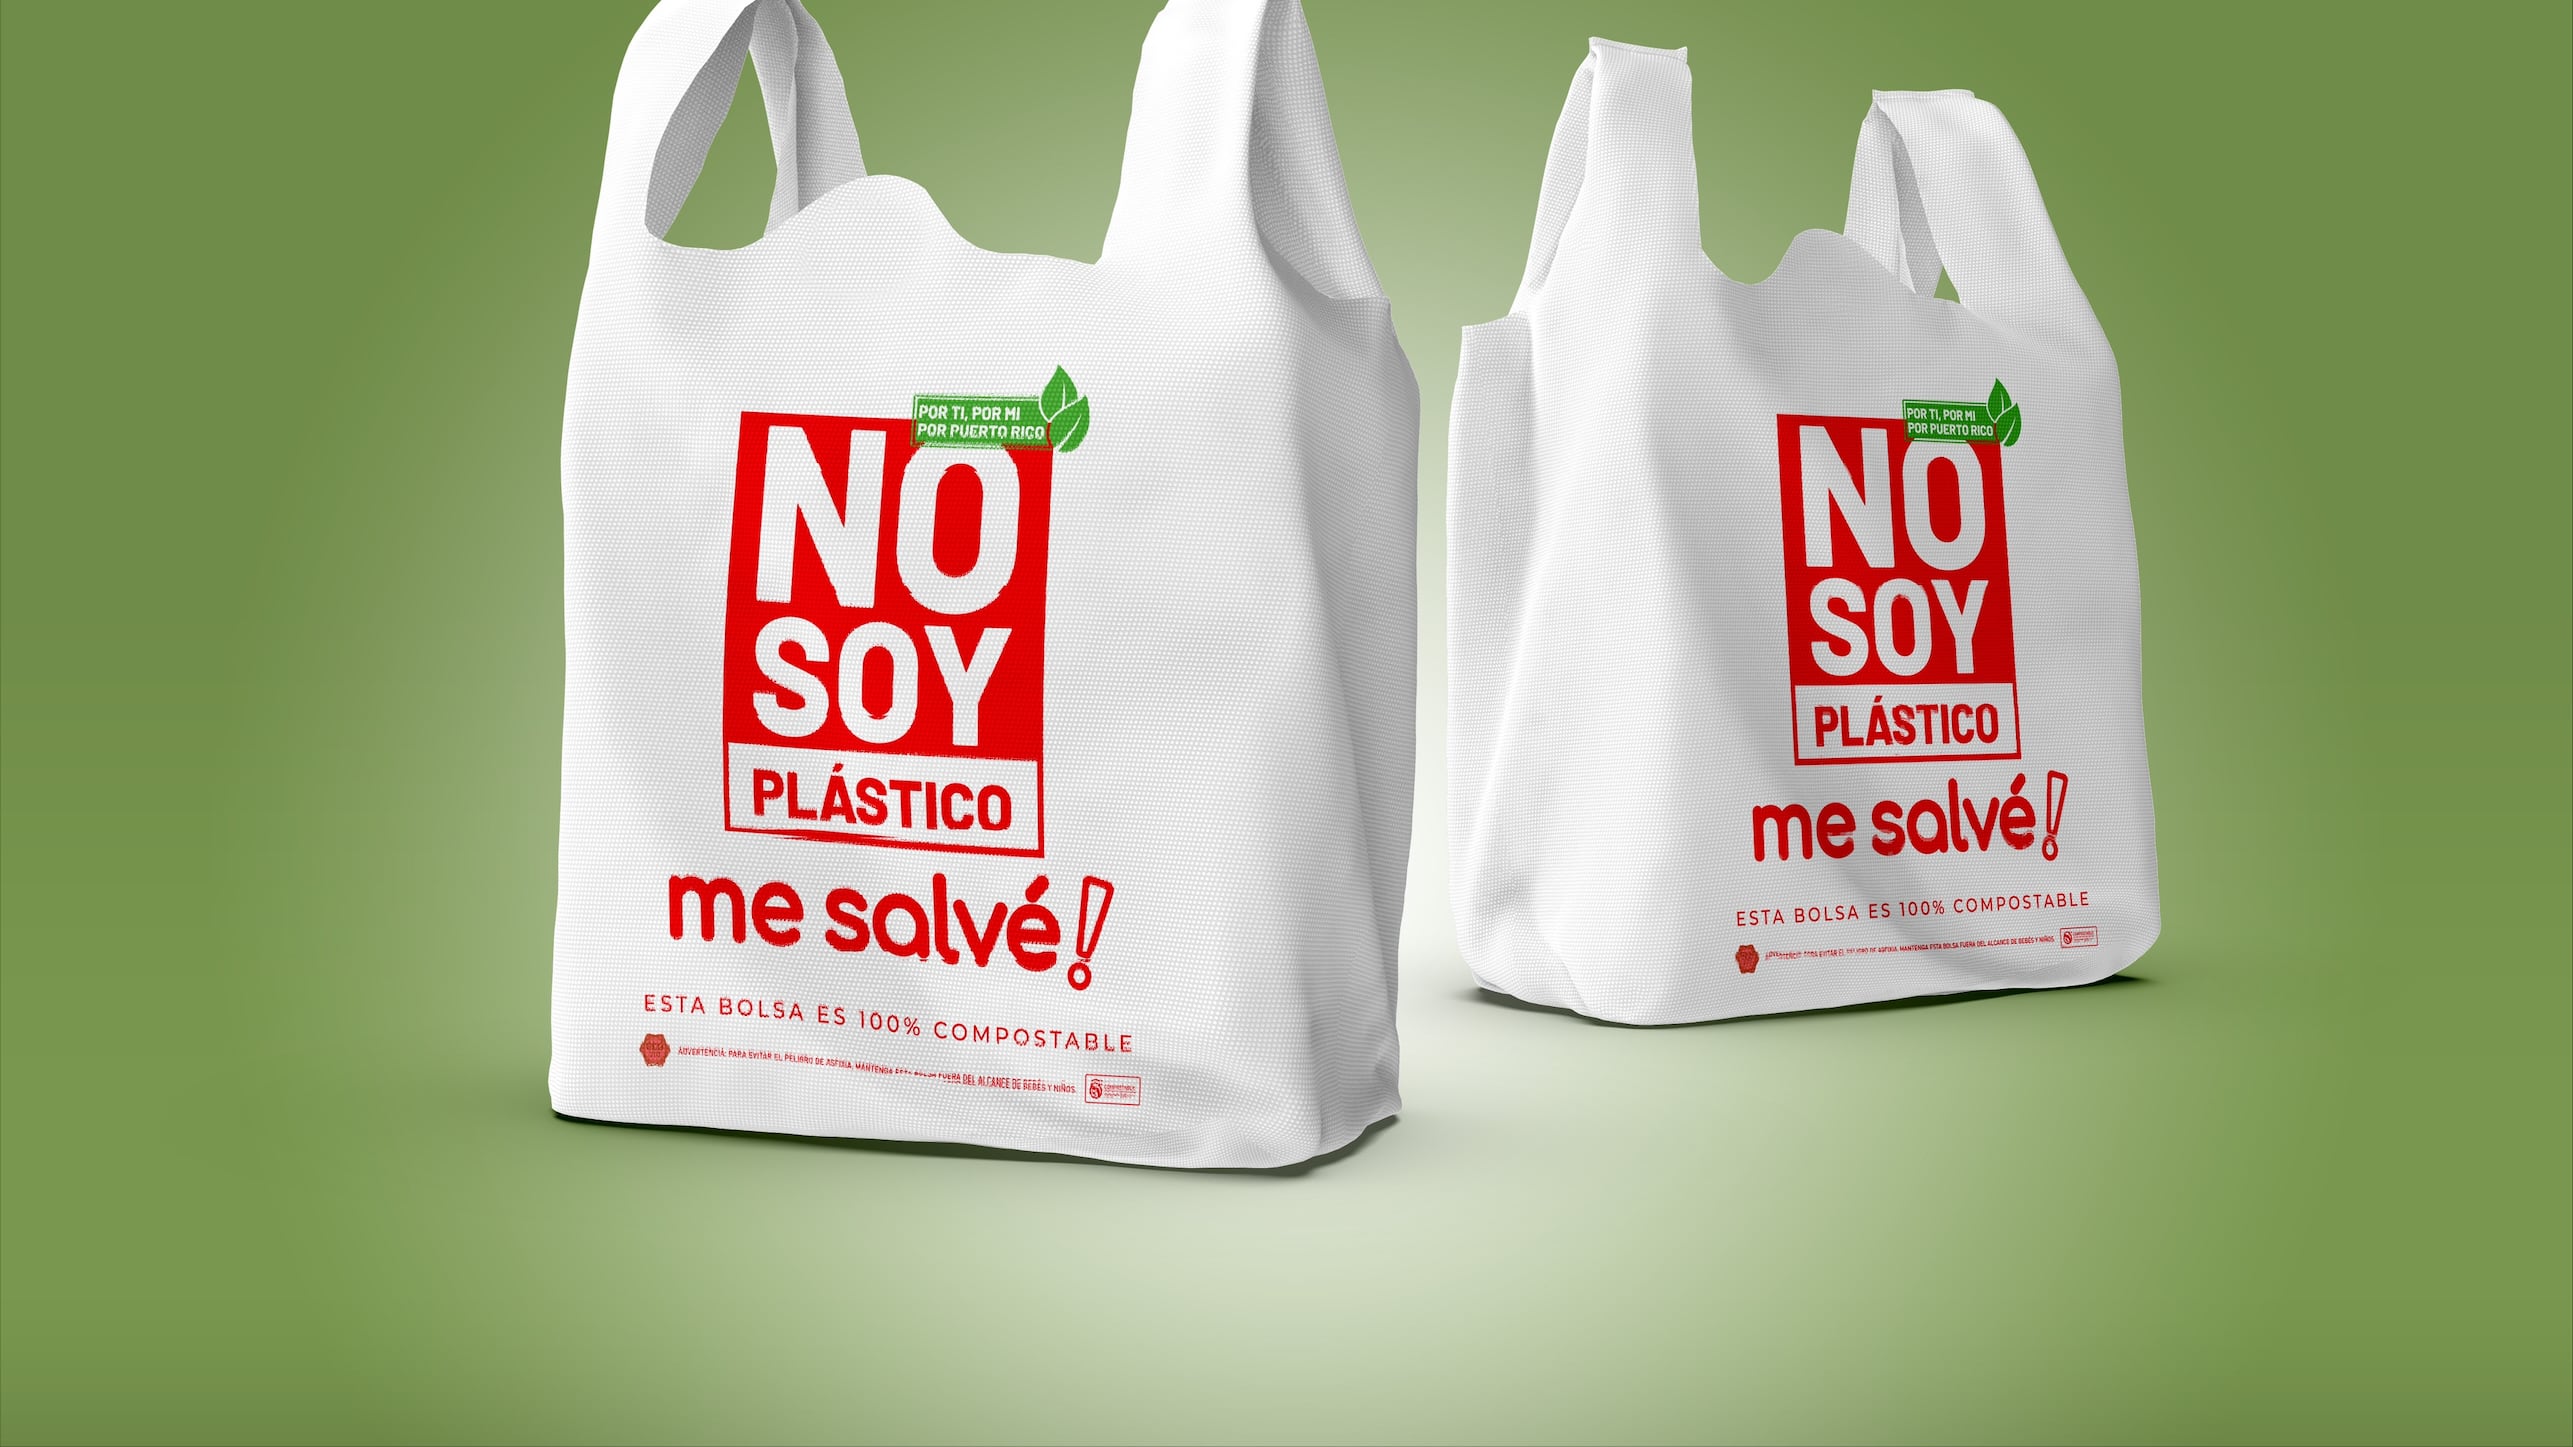 Me Salvé comienza a utilizar bolsas 100% compostables